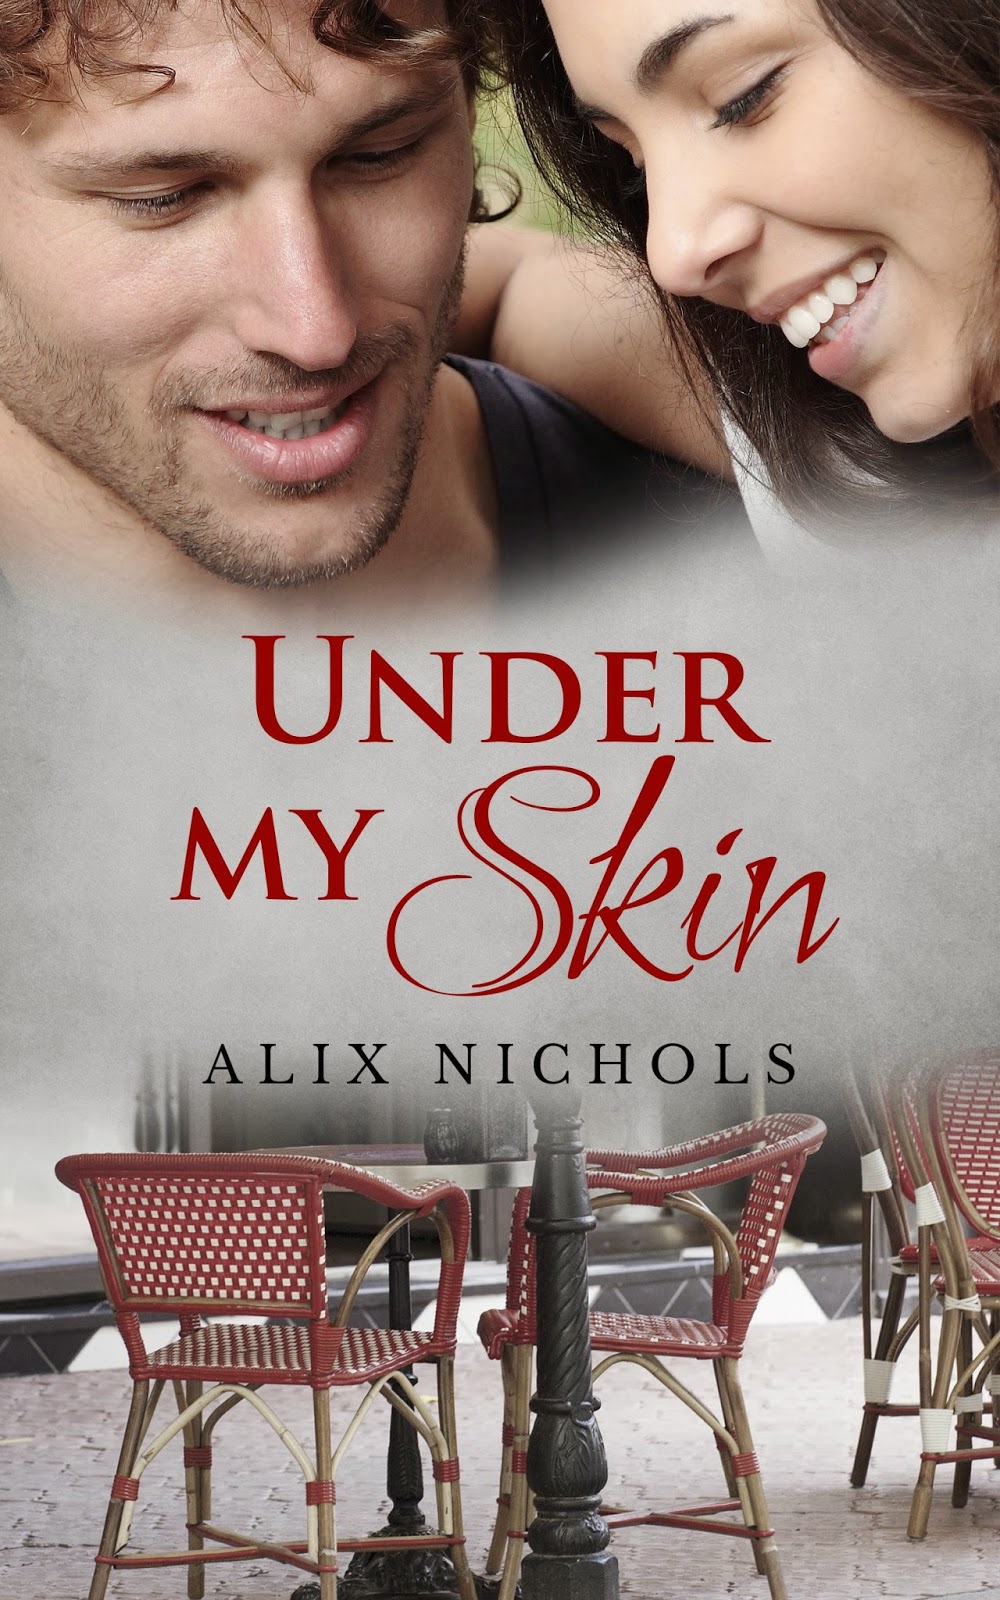  Under My Skin by Alix Nichols